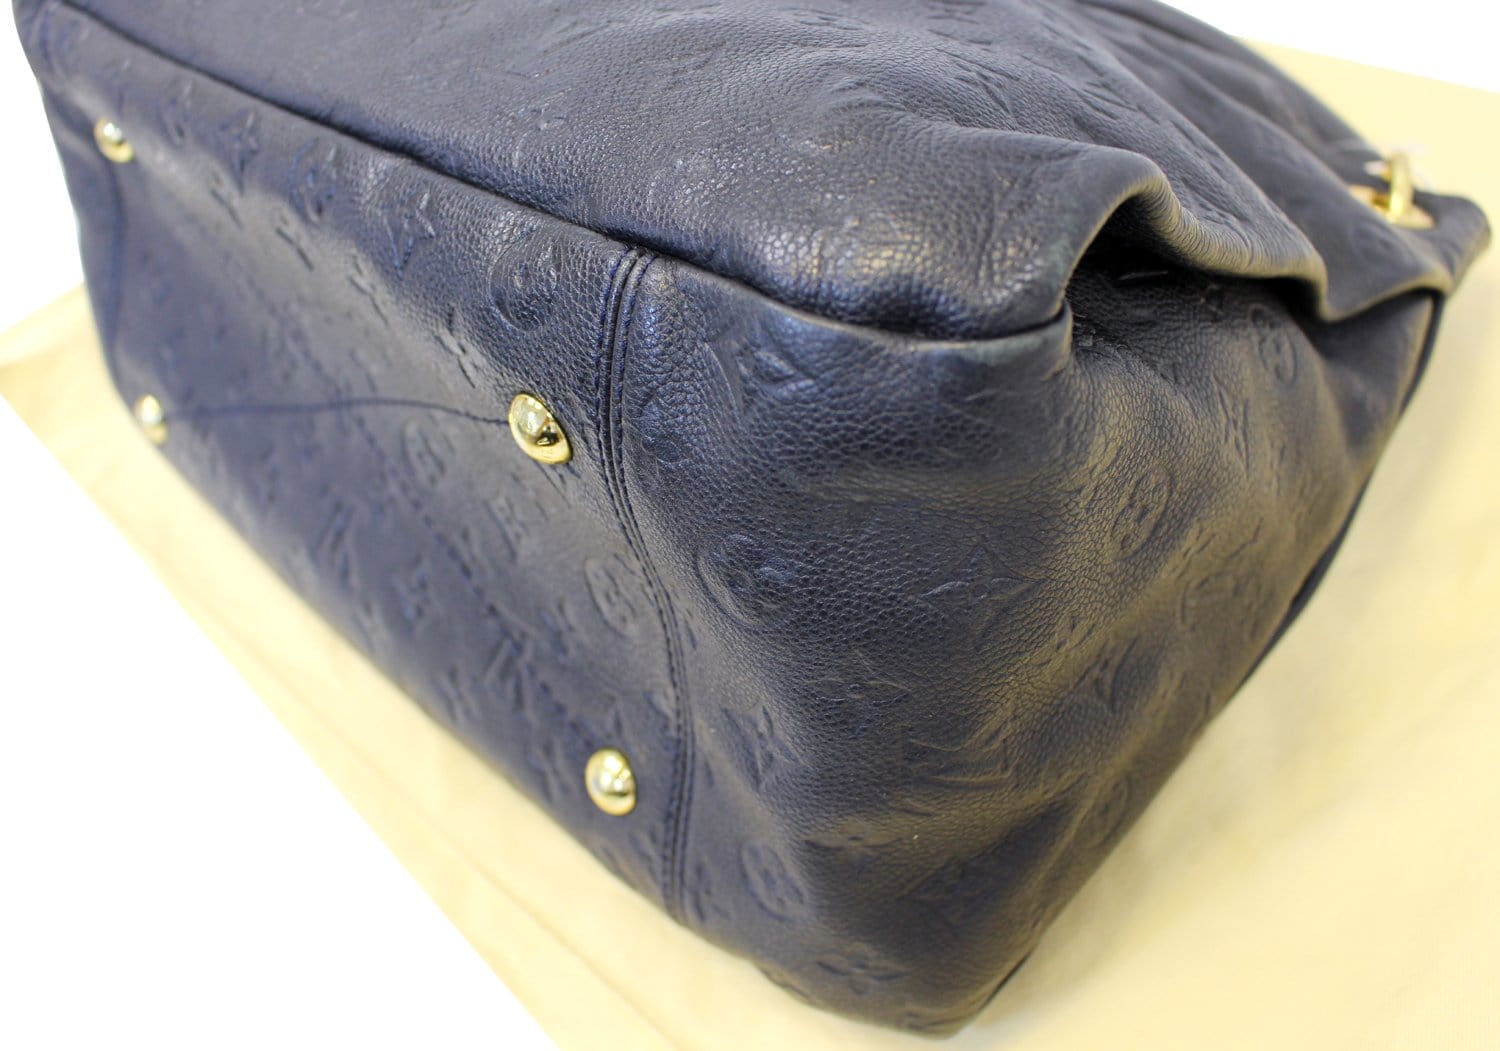 Louis Vuitton artsy handbag in midnight blue embossed